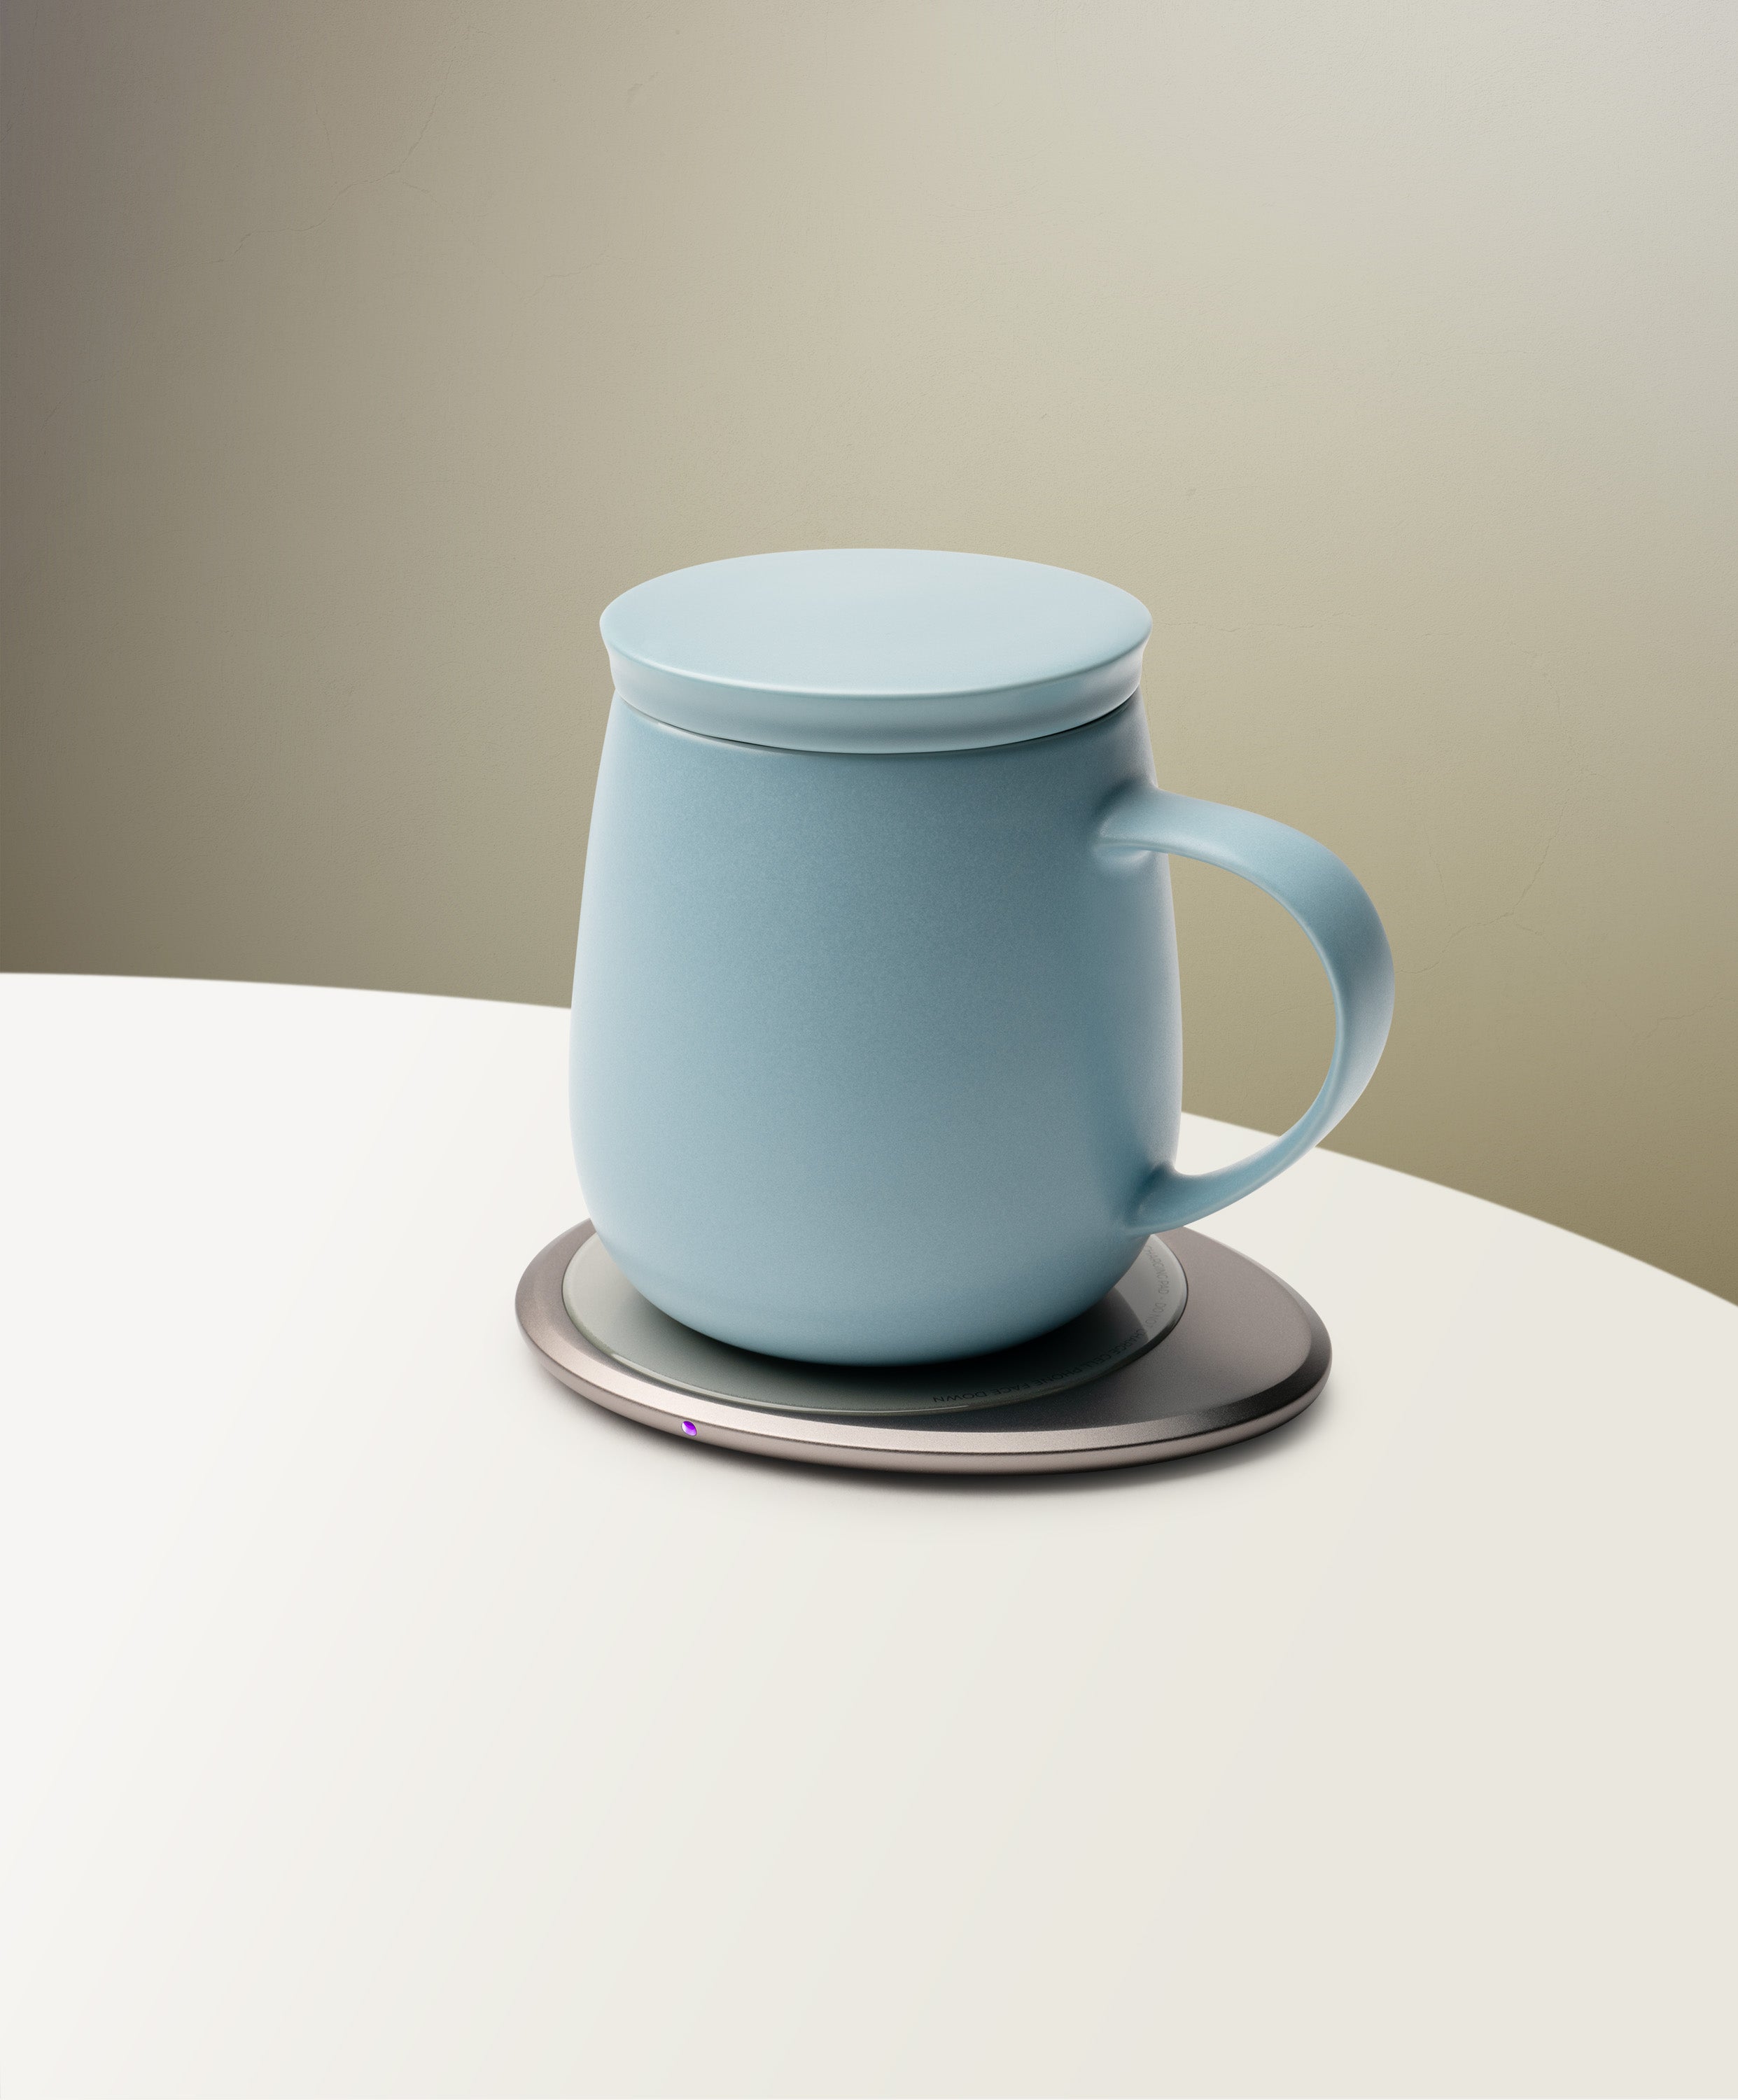 Ui 3 Self-heating Mug Set - Moonmist Blue